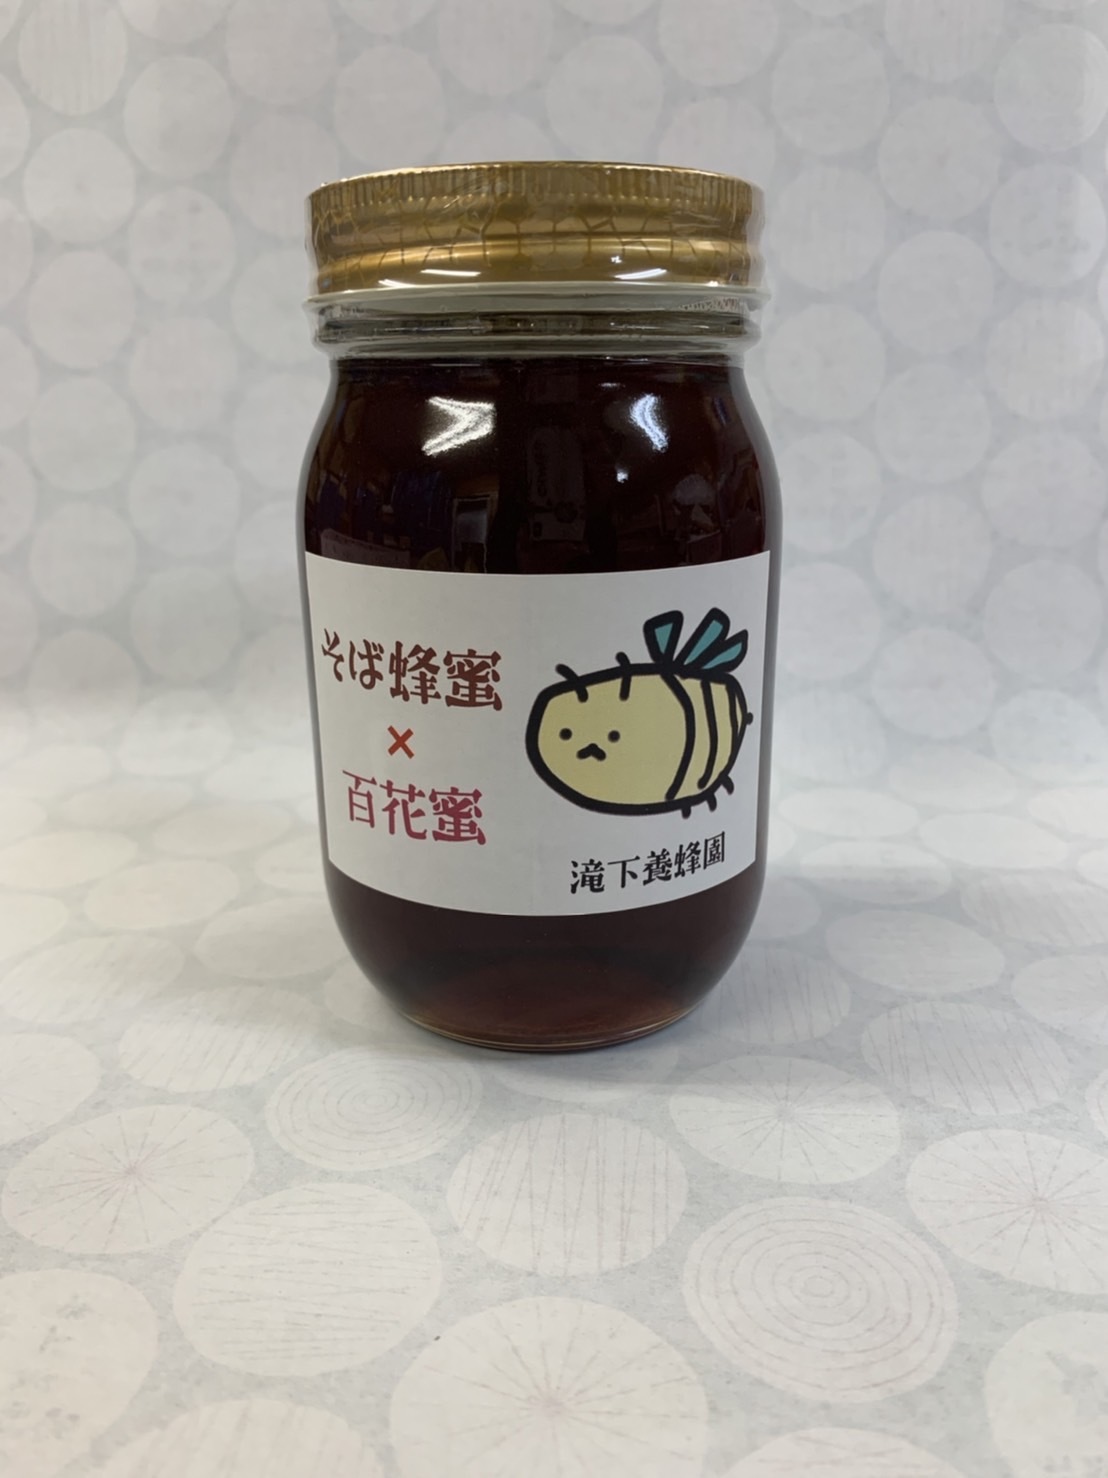 入荷処理 国産アカシア蜂蜜300g×4とソバ蜜入り百花蜂蜜1200g×3 - 食品